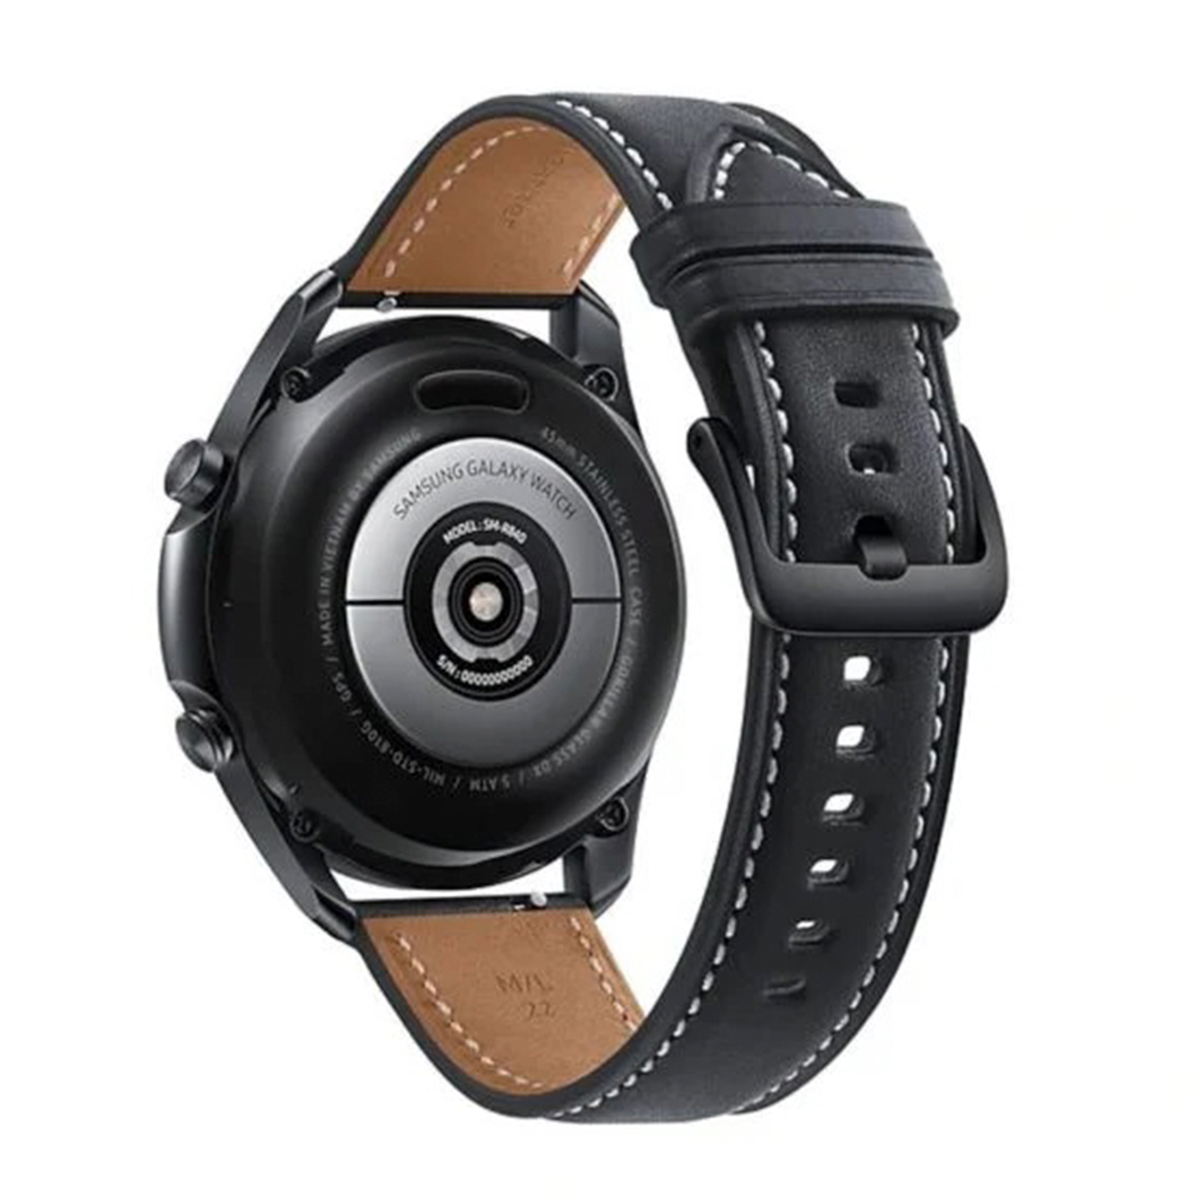 Buy Samsung Galaxy Watch 3 R840 45mm Mystic Black Jbl Earbud Jblt120tws Black Watch Part No Sm R840nzkamea Jbl Part No F Jblt120twsbl Online Lulu Hypermarket Uae